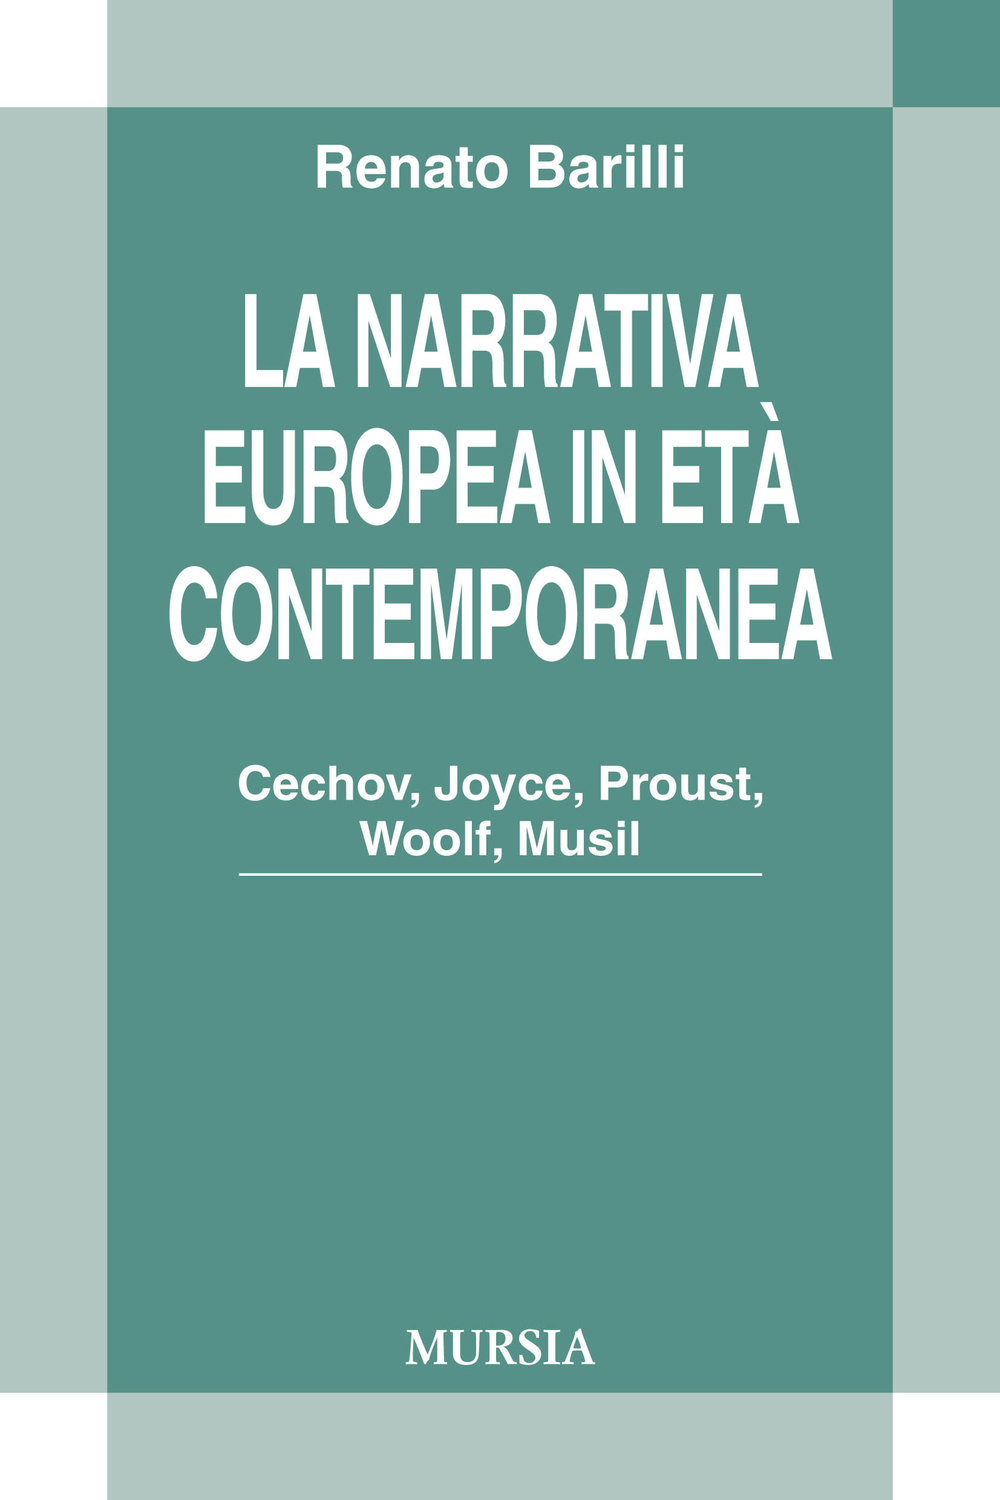 La narrativa europea in età contemporanea. Cechov, Joyce, Proust, Woolf, Musil